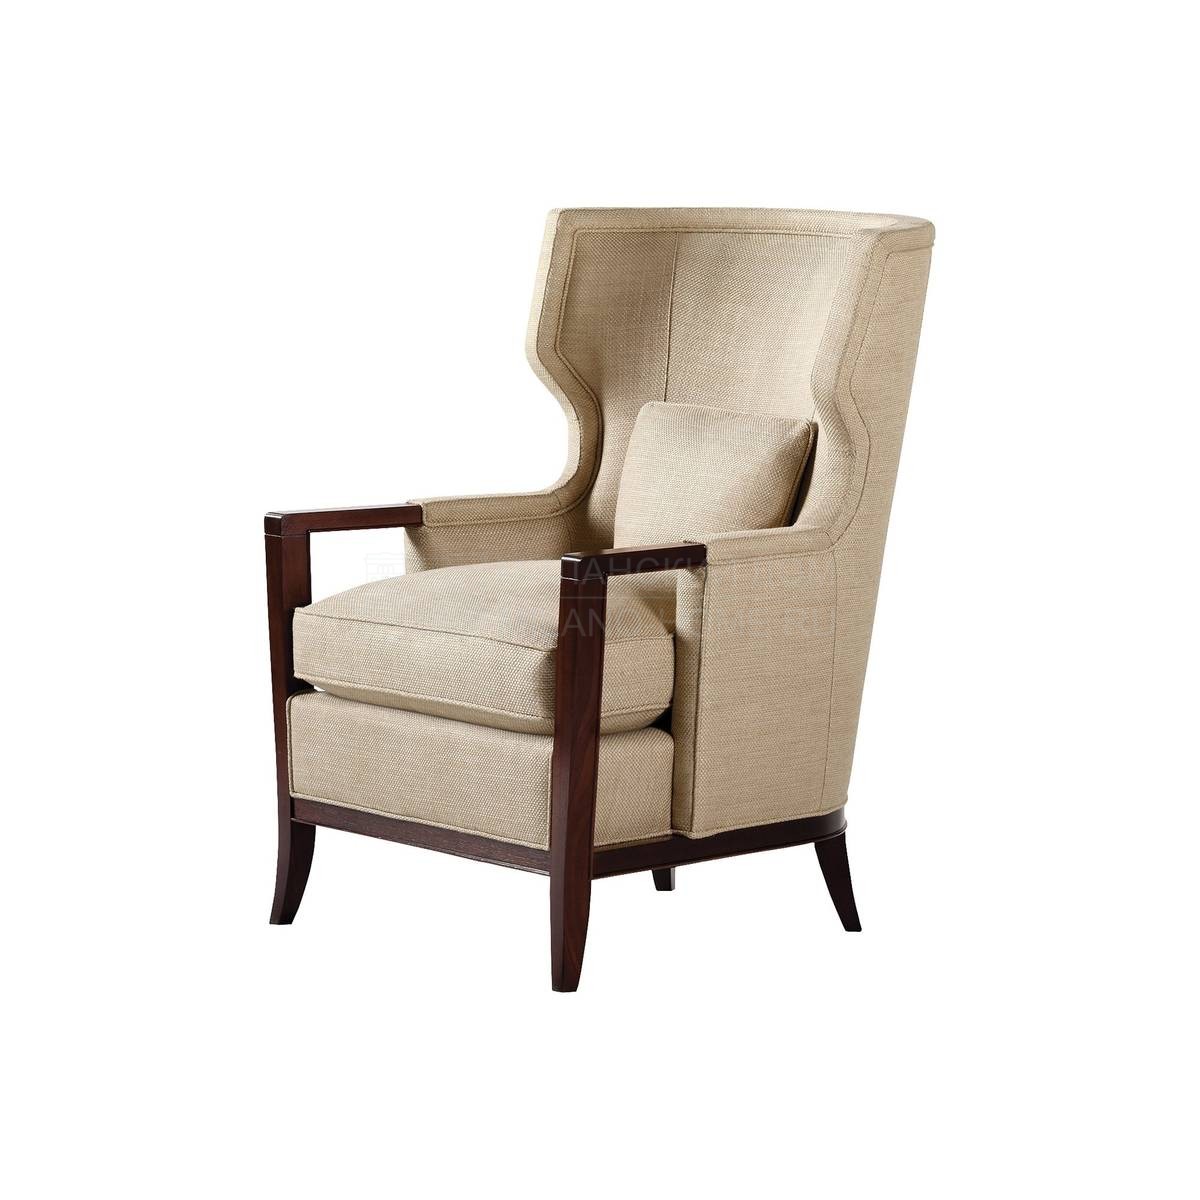 Каминное кресло Manor/6348 из США фабрики BAKER